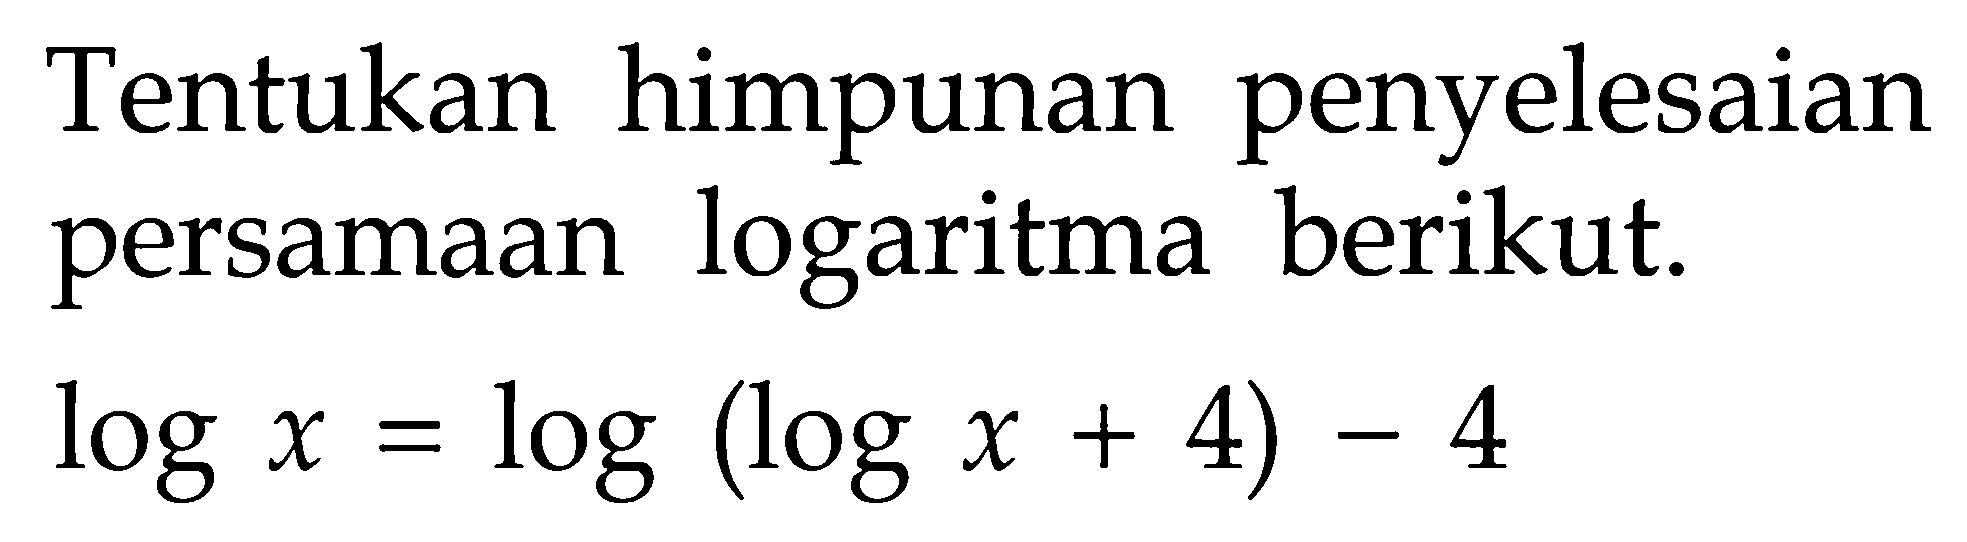 Tentukan himpunan penyelesaian persamaan logaritma berikut. logx=log(logx+4)-4